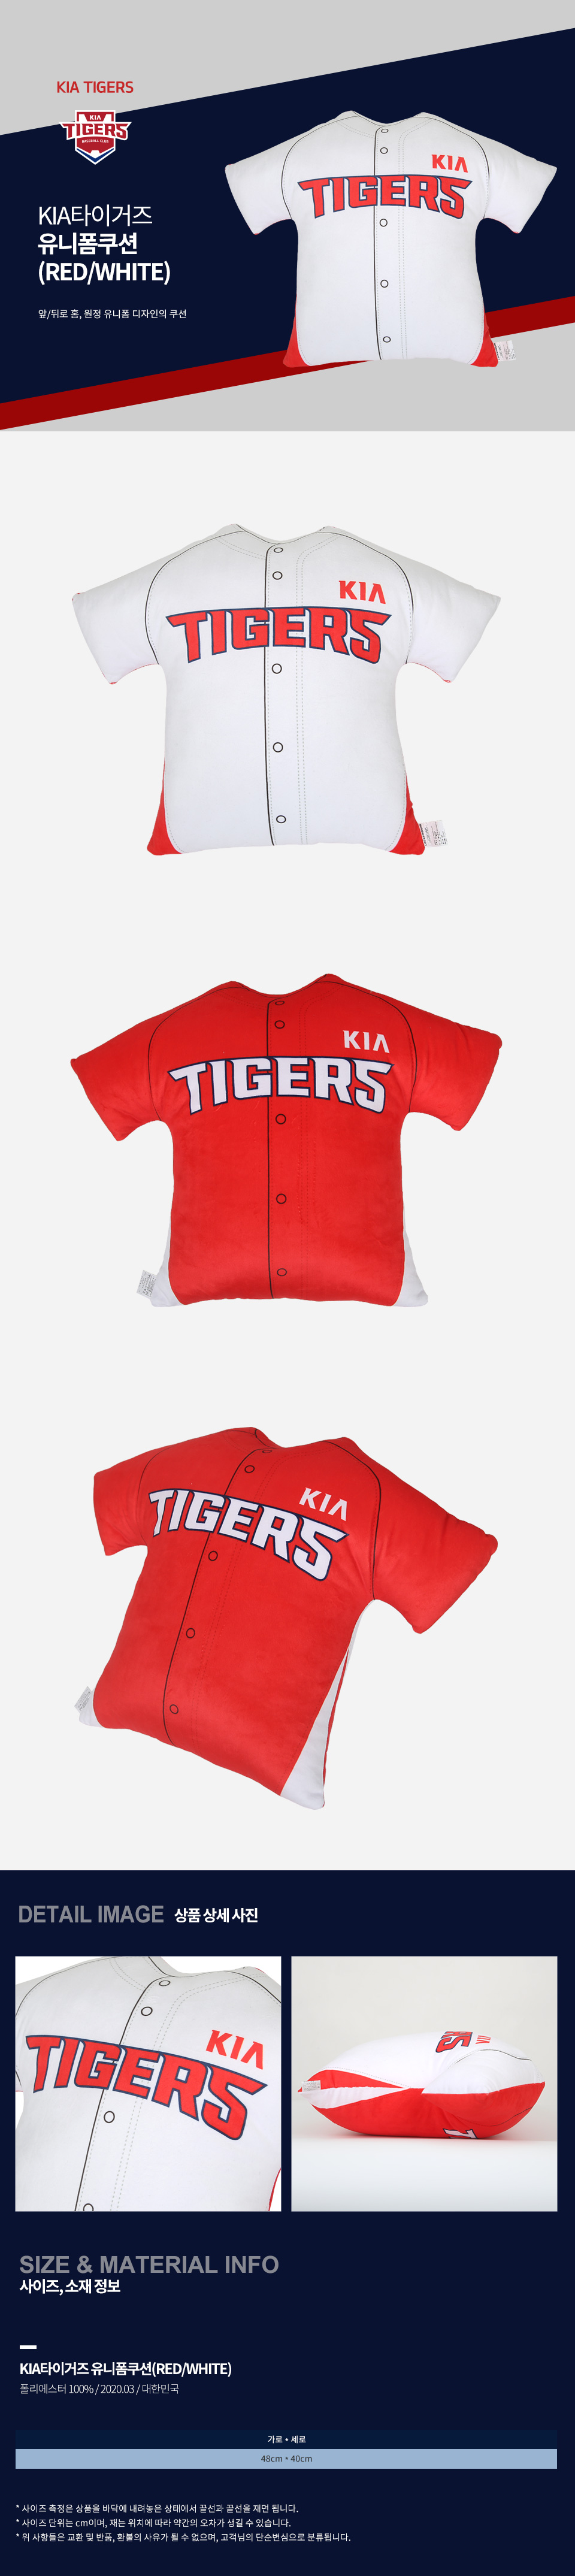 kia tigers jersey